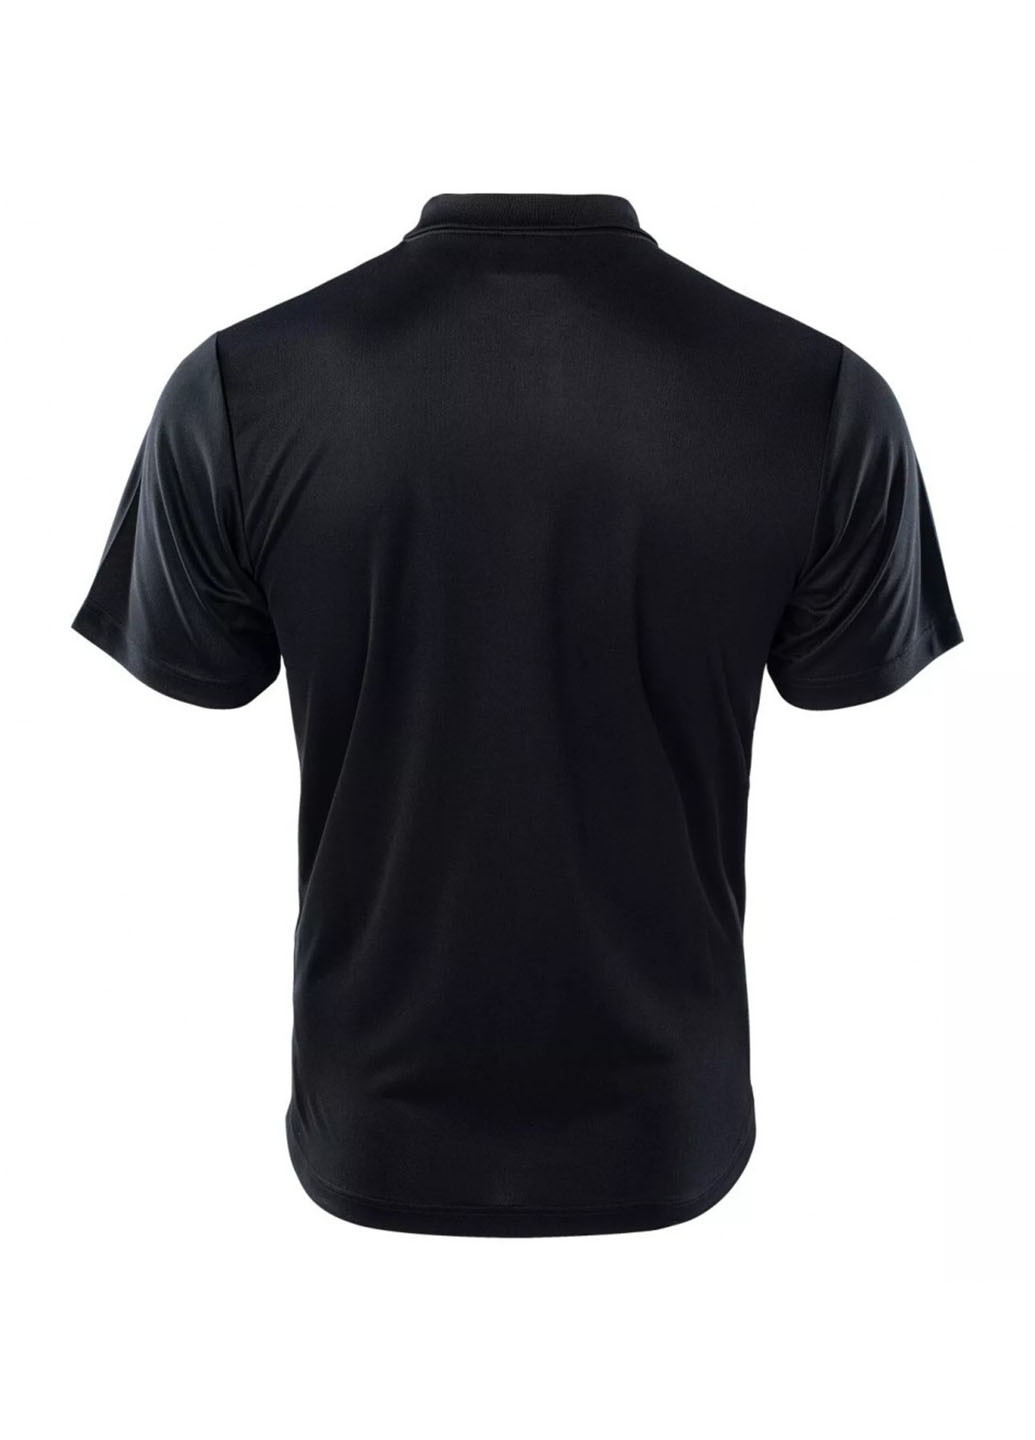 Черная футболка-поло для мужчин Martes однотонная